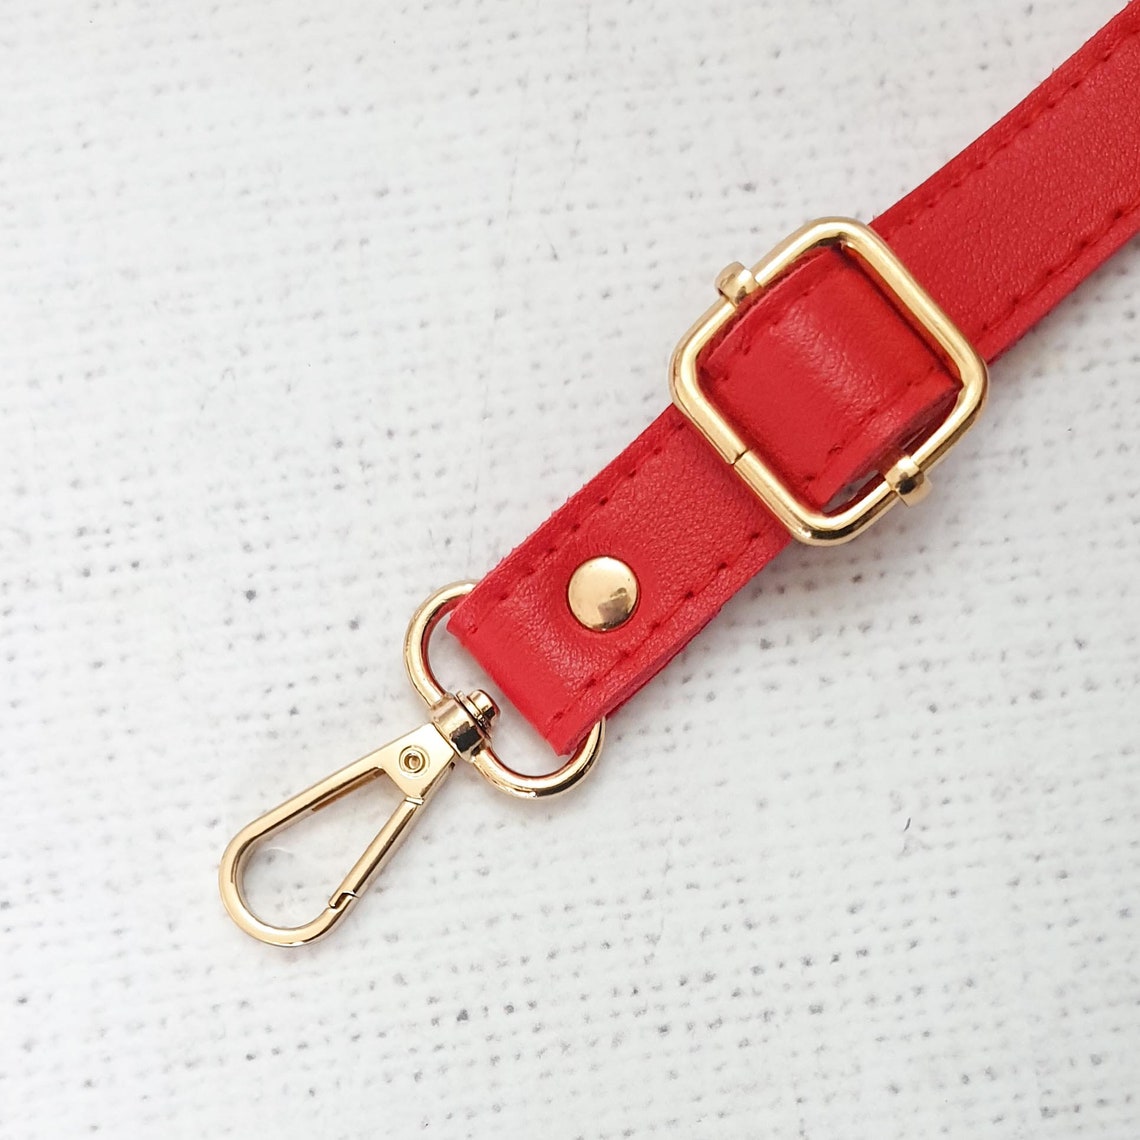 RED / GOLD Adjustable PU leather bag straps 75cm 138cm | Etsy